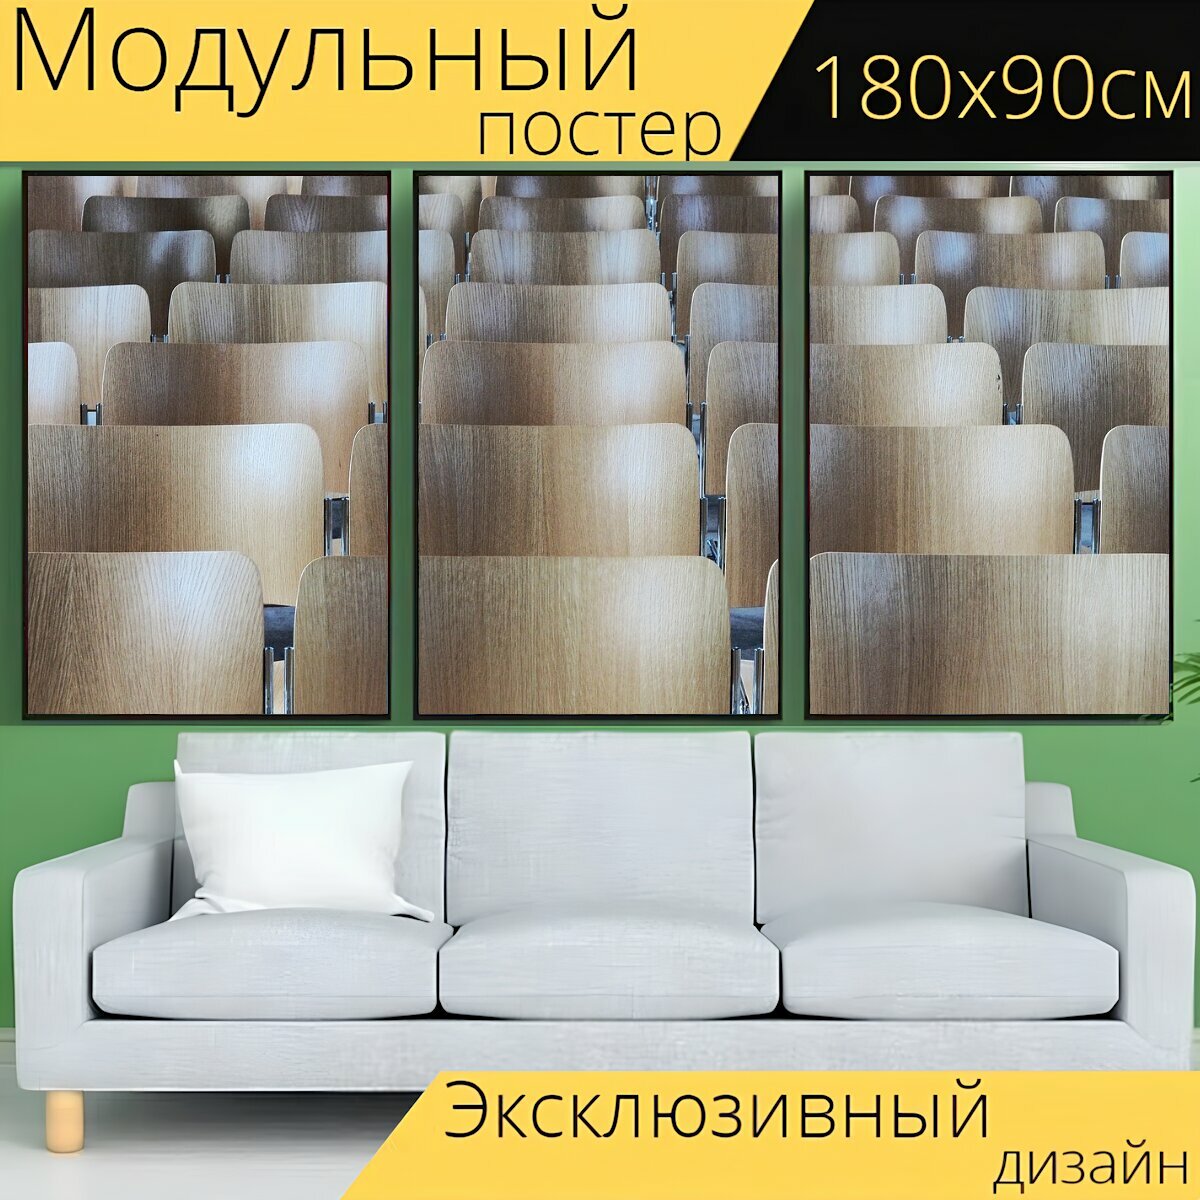 Модульный постер "Стул, ряды, сиденье" 180 x 90 см. для интерьера